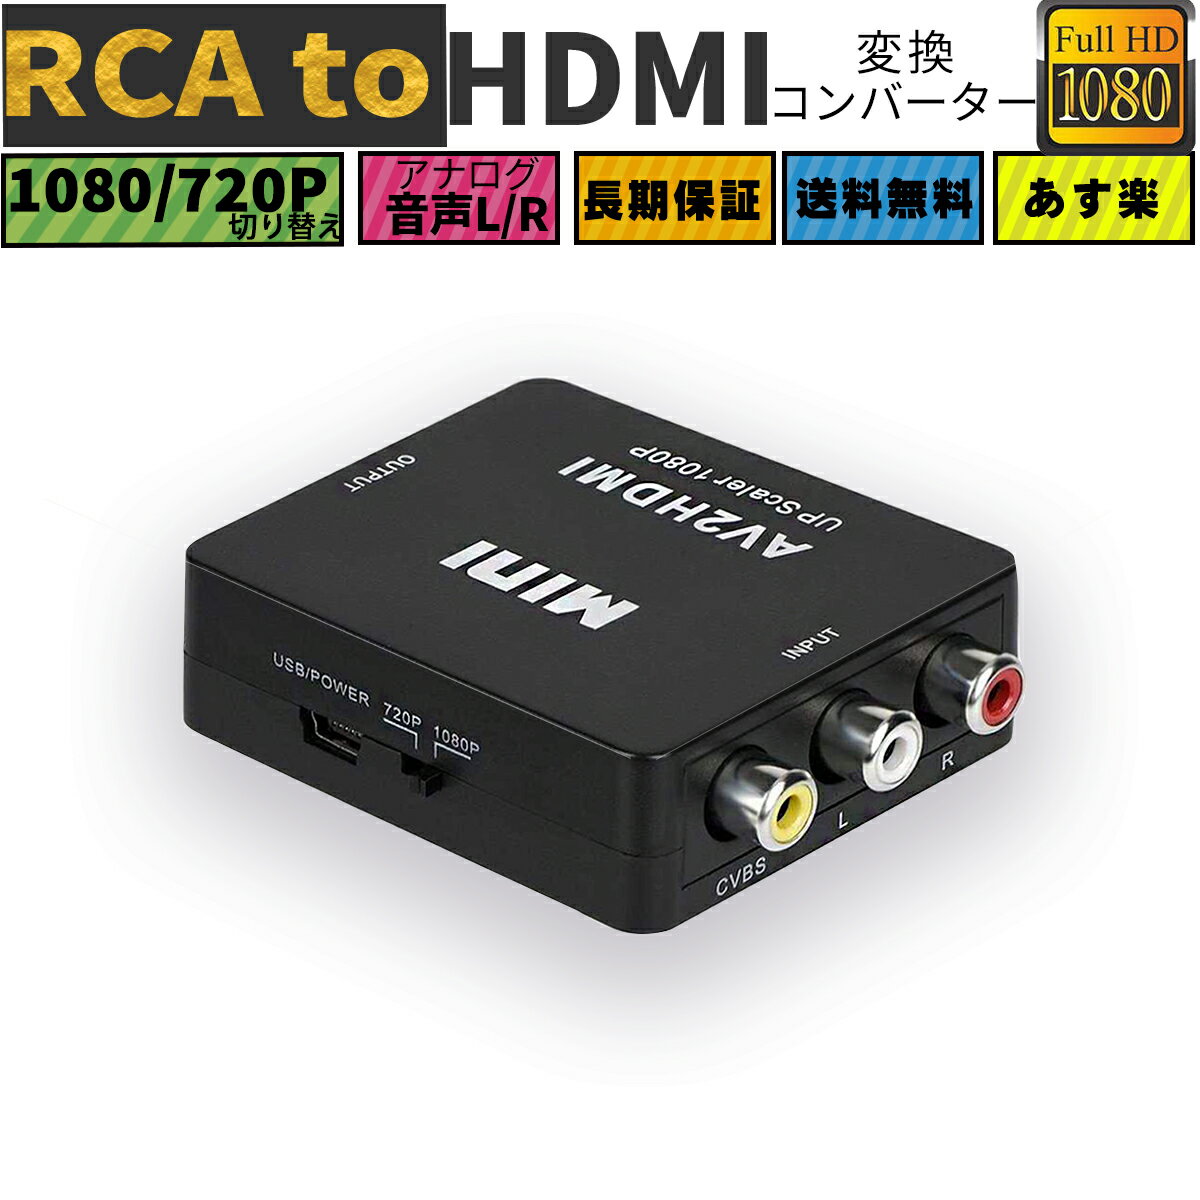 BY RCAからHDMI、1080P Mini RCAコンポジットCVBS AVからHDMIビデオオーディオコンバーターアダプター、720P/1080Pをサポート、USB充電ケーブル付き。  pmKjA5vrgA